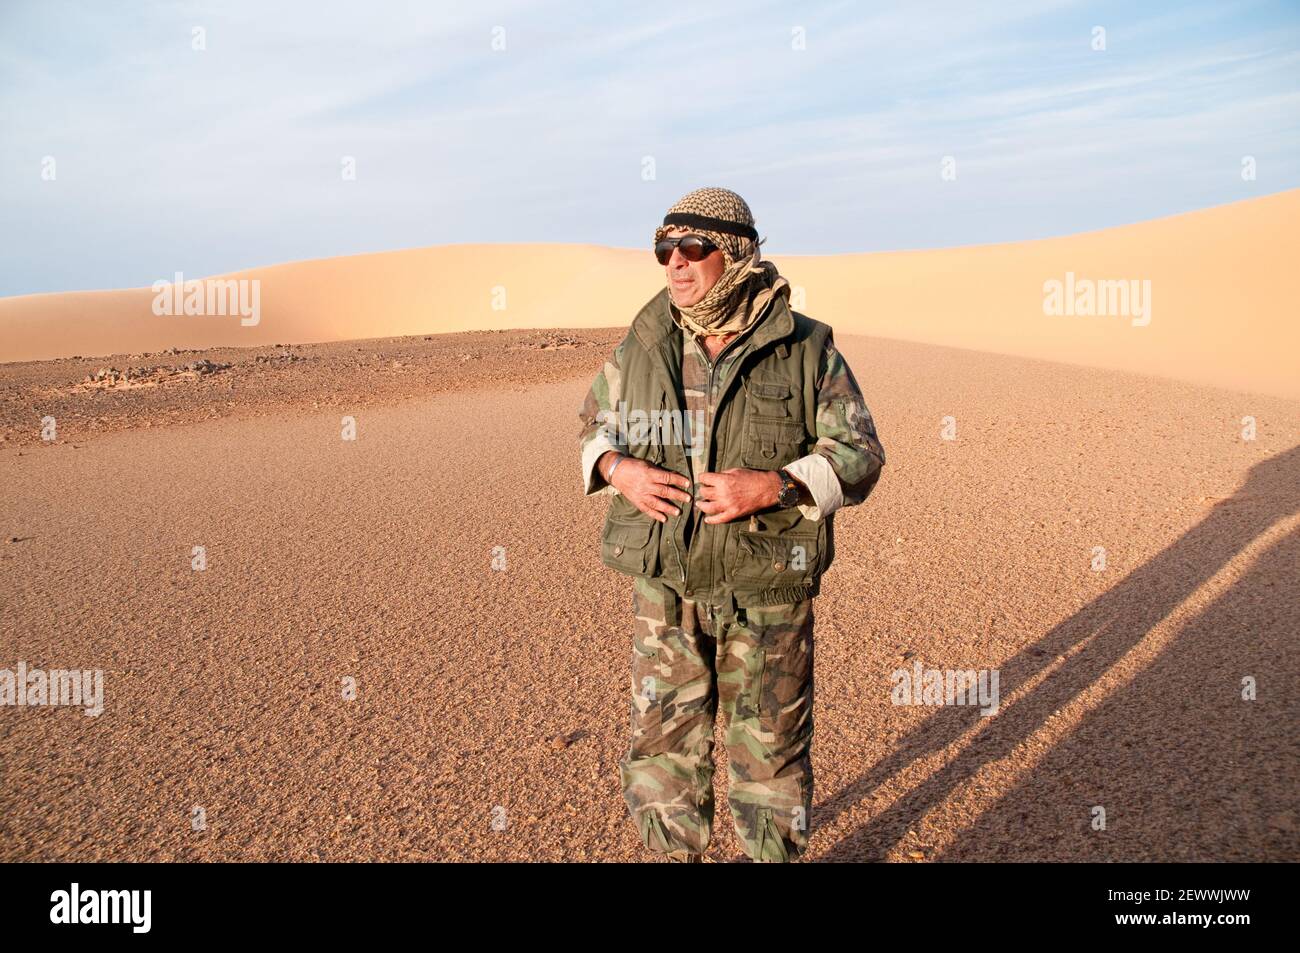 Egyptian desert explorer Ahmed Mestikawi standing beside a sand dune in the Great Sand Sea region of the Western Desert (Sahara) of Egypt. Stock Photo